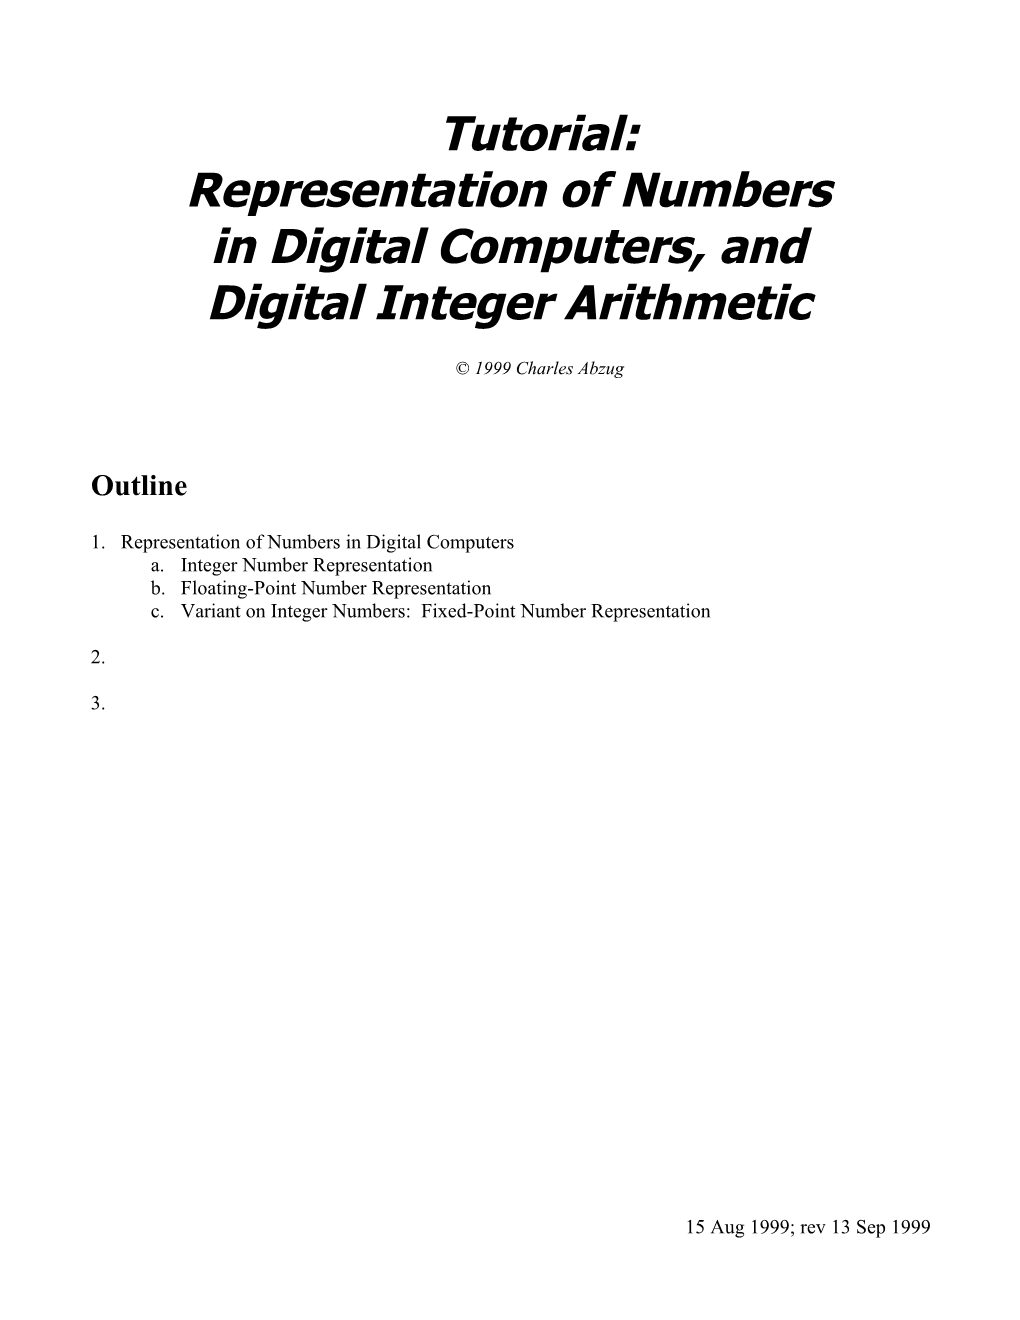 Tutorial: Representation of Numbers in Digital Computers, and Digital Integer Arithmetic